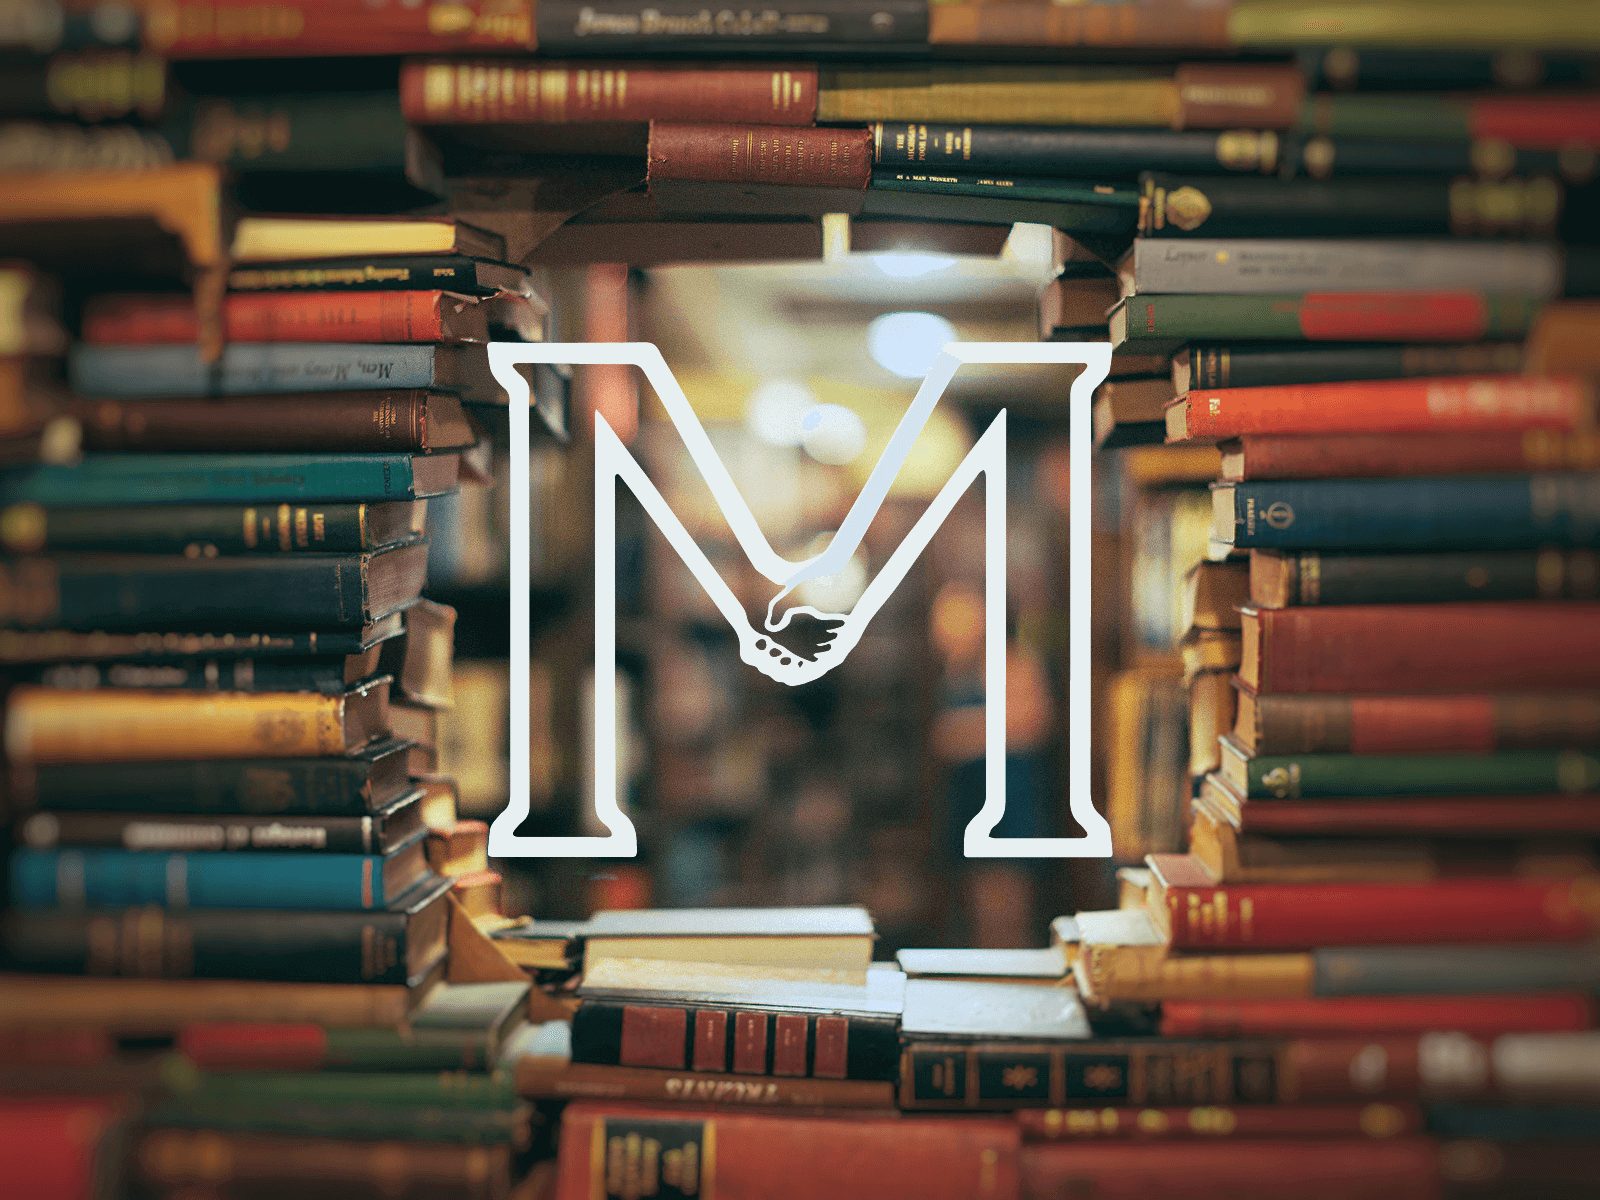 Uma serie de livros empilhados com o logo da Morhan em destaque